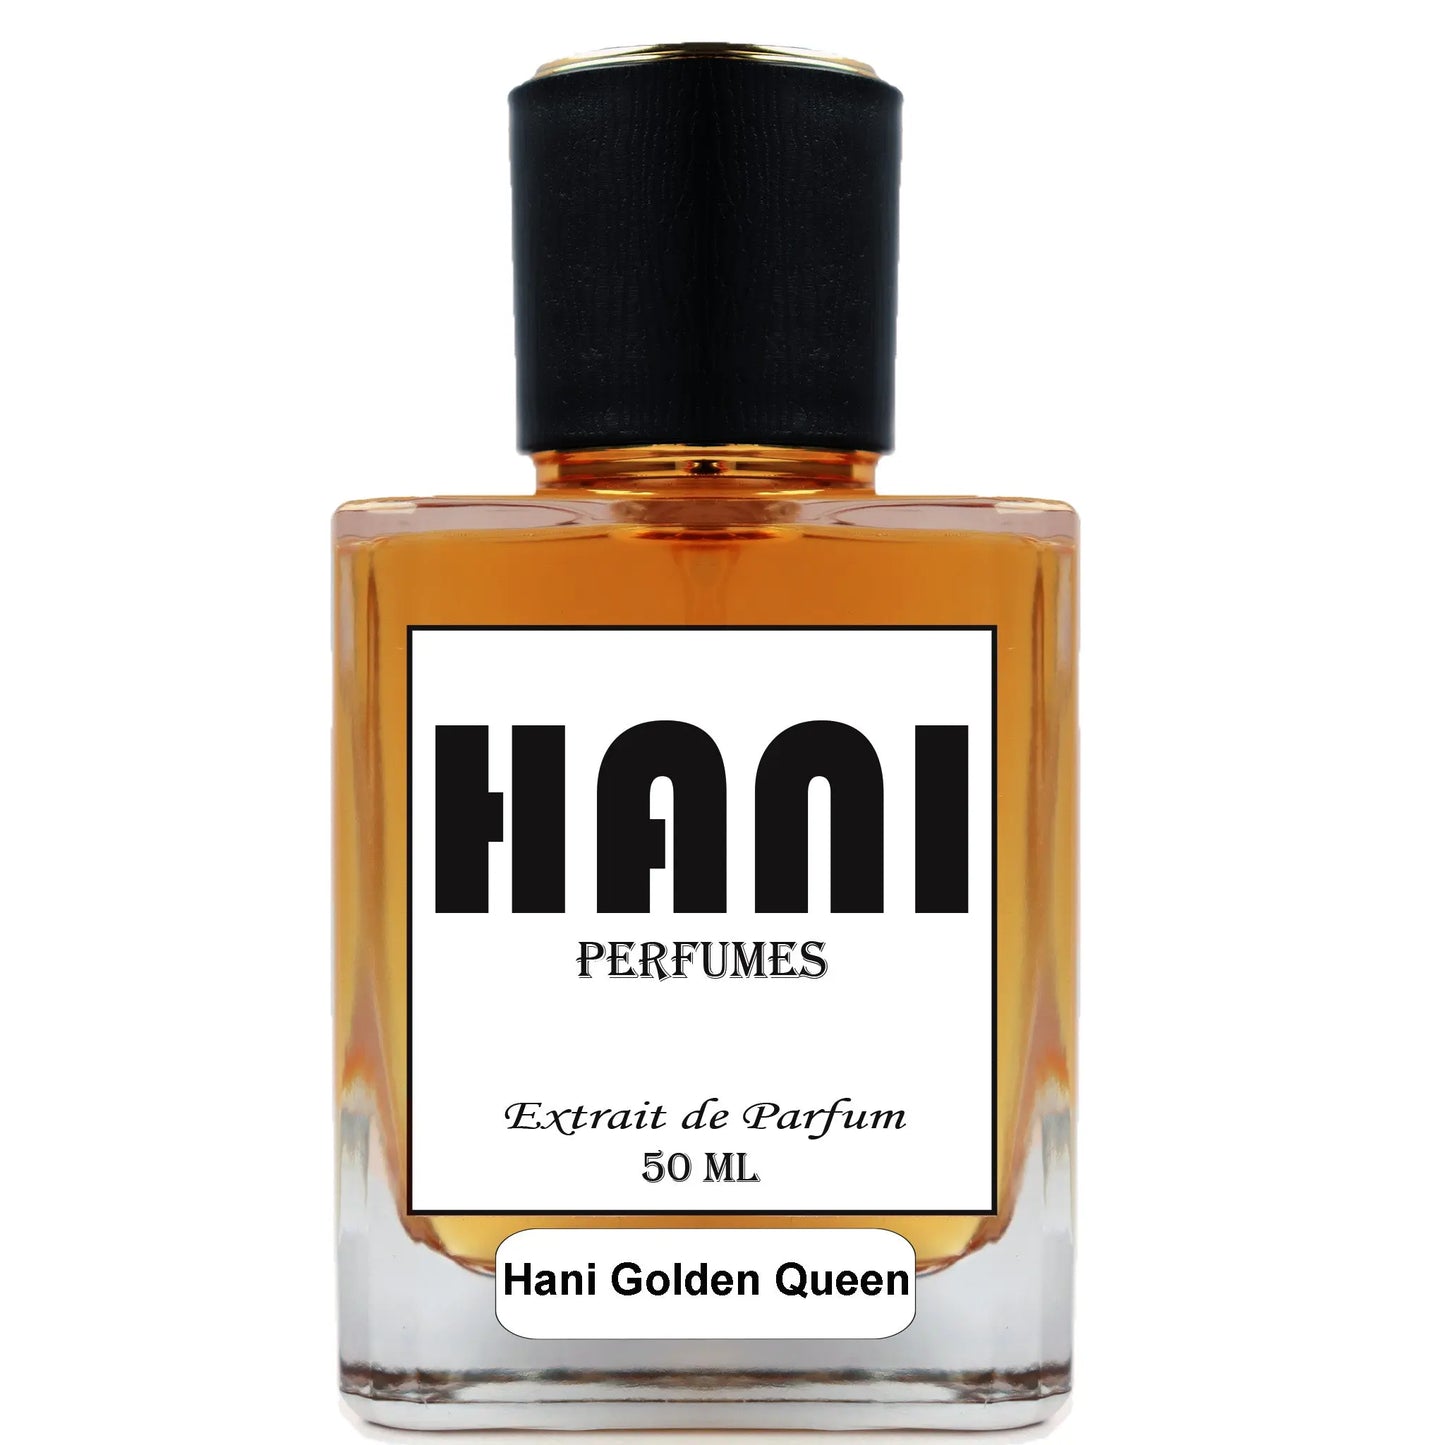 Hani Golden Queen Hani Perfumes